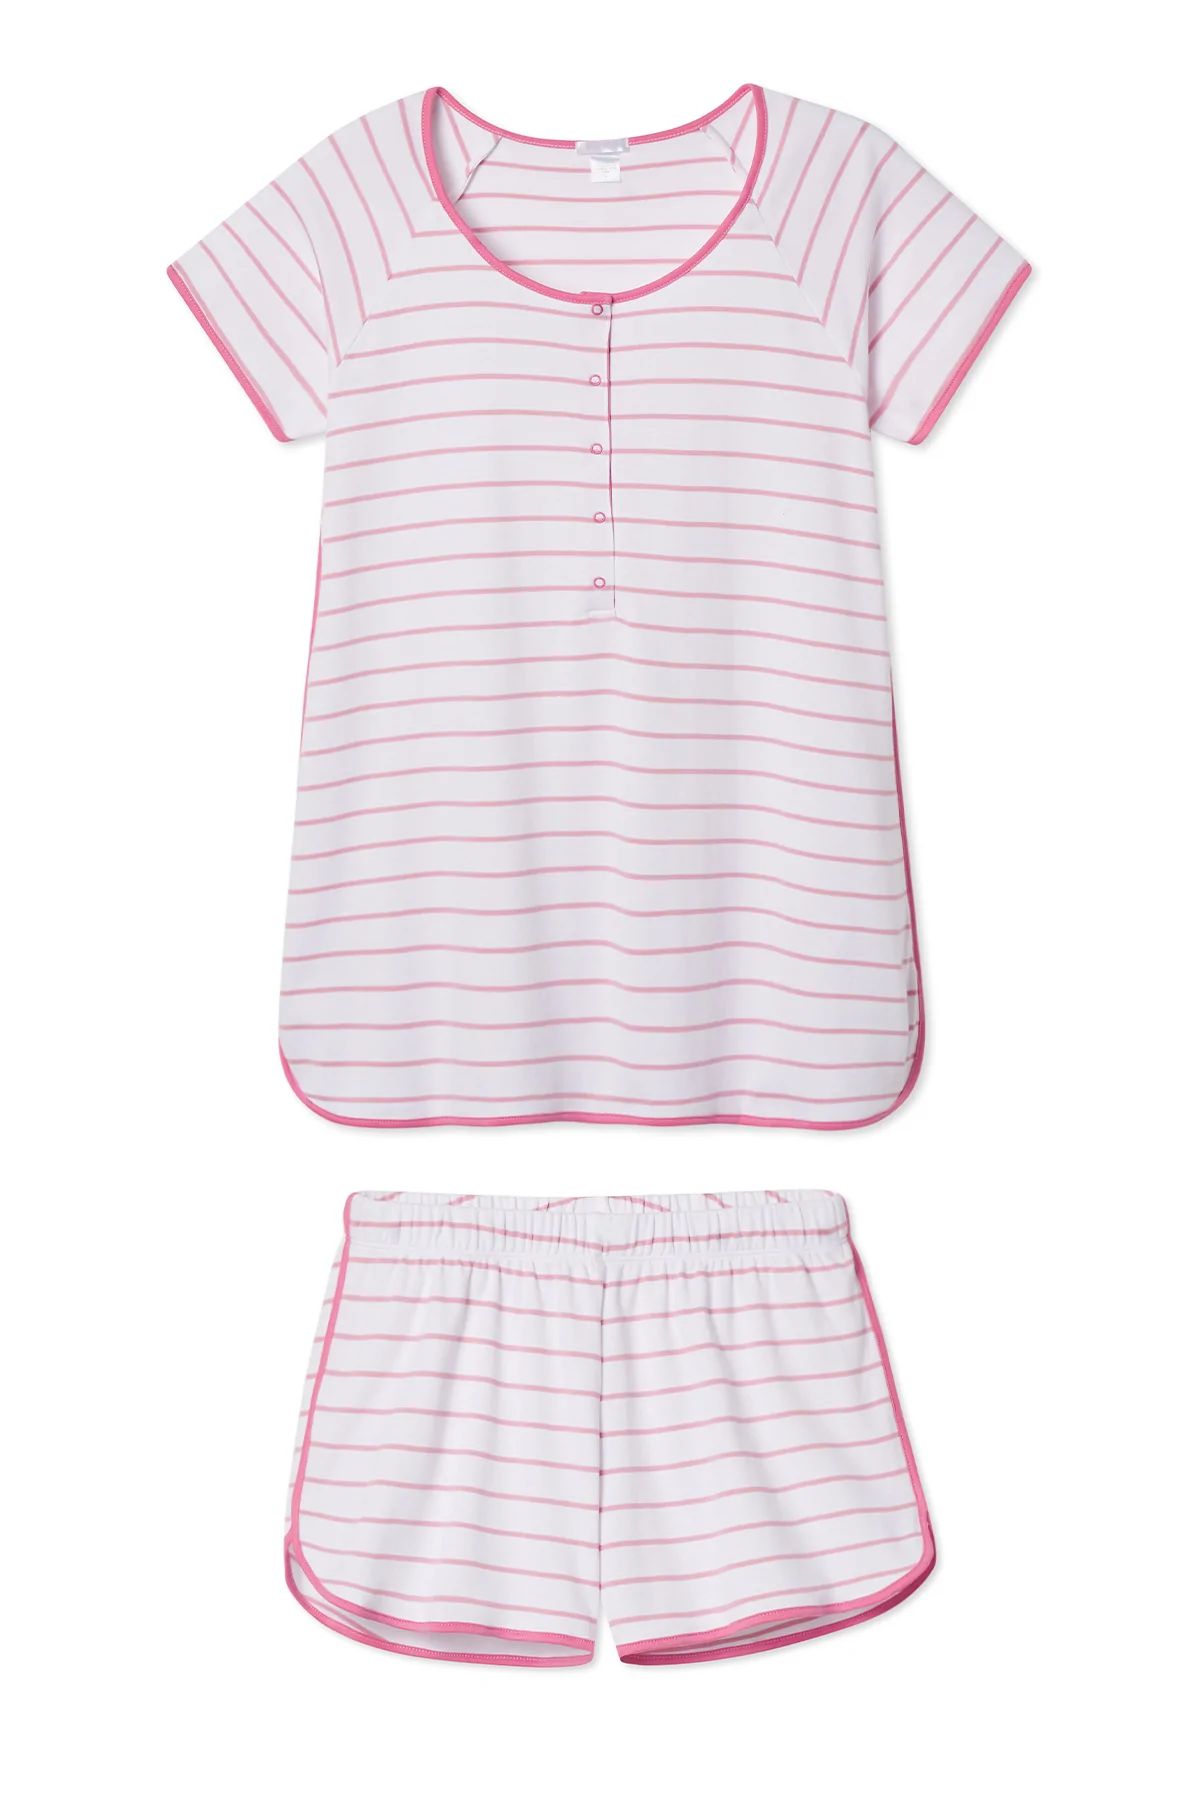 Pima Maternity Shorts Set in Hydrangea | LAKE Pajamas